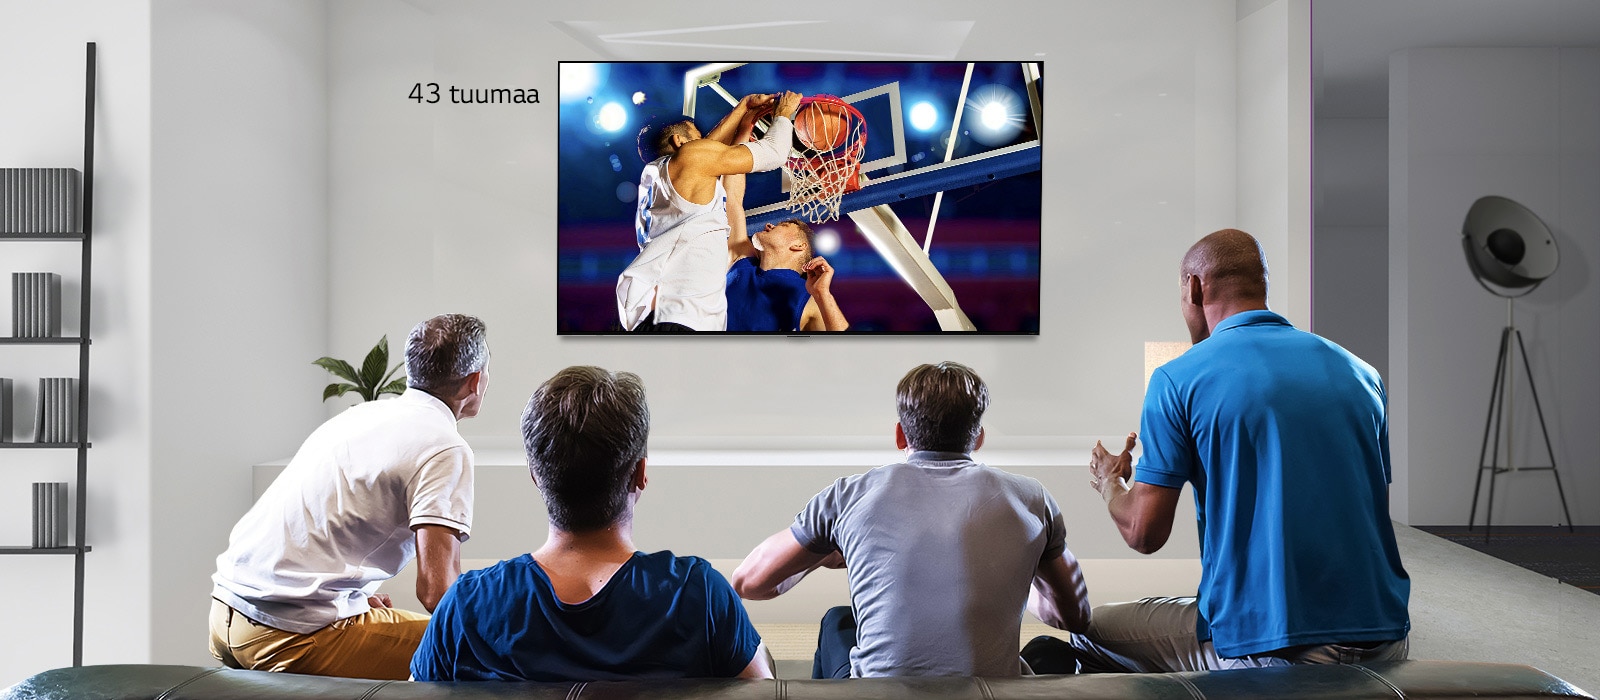 Kuva takaapäin neljästä miehestä, jotka katsovat koripalloa seinälle asennetusta televisiosta. Vieritettäessä vasemmalle näkyy ero 43-tuumaisen ja 86-tuumaisen kuvaruudun välillä.